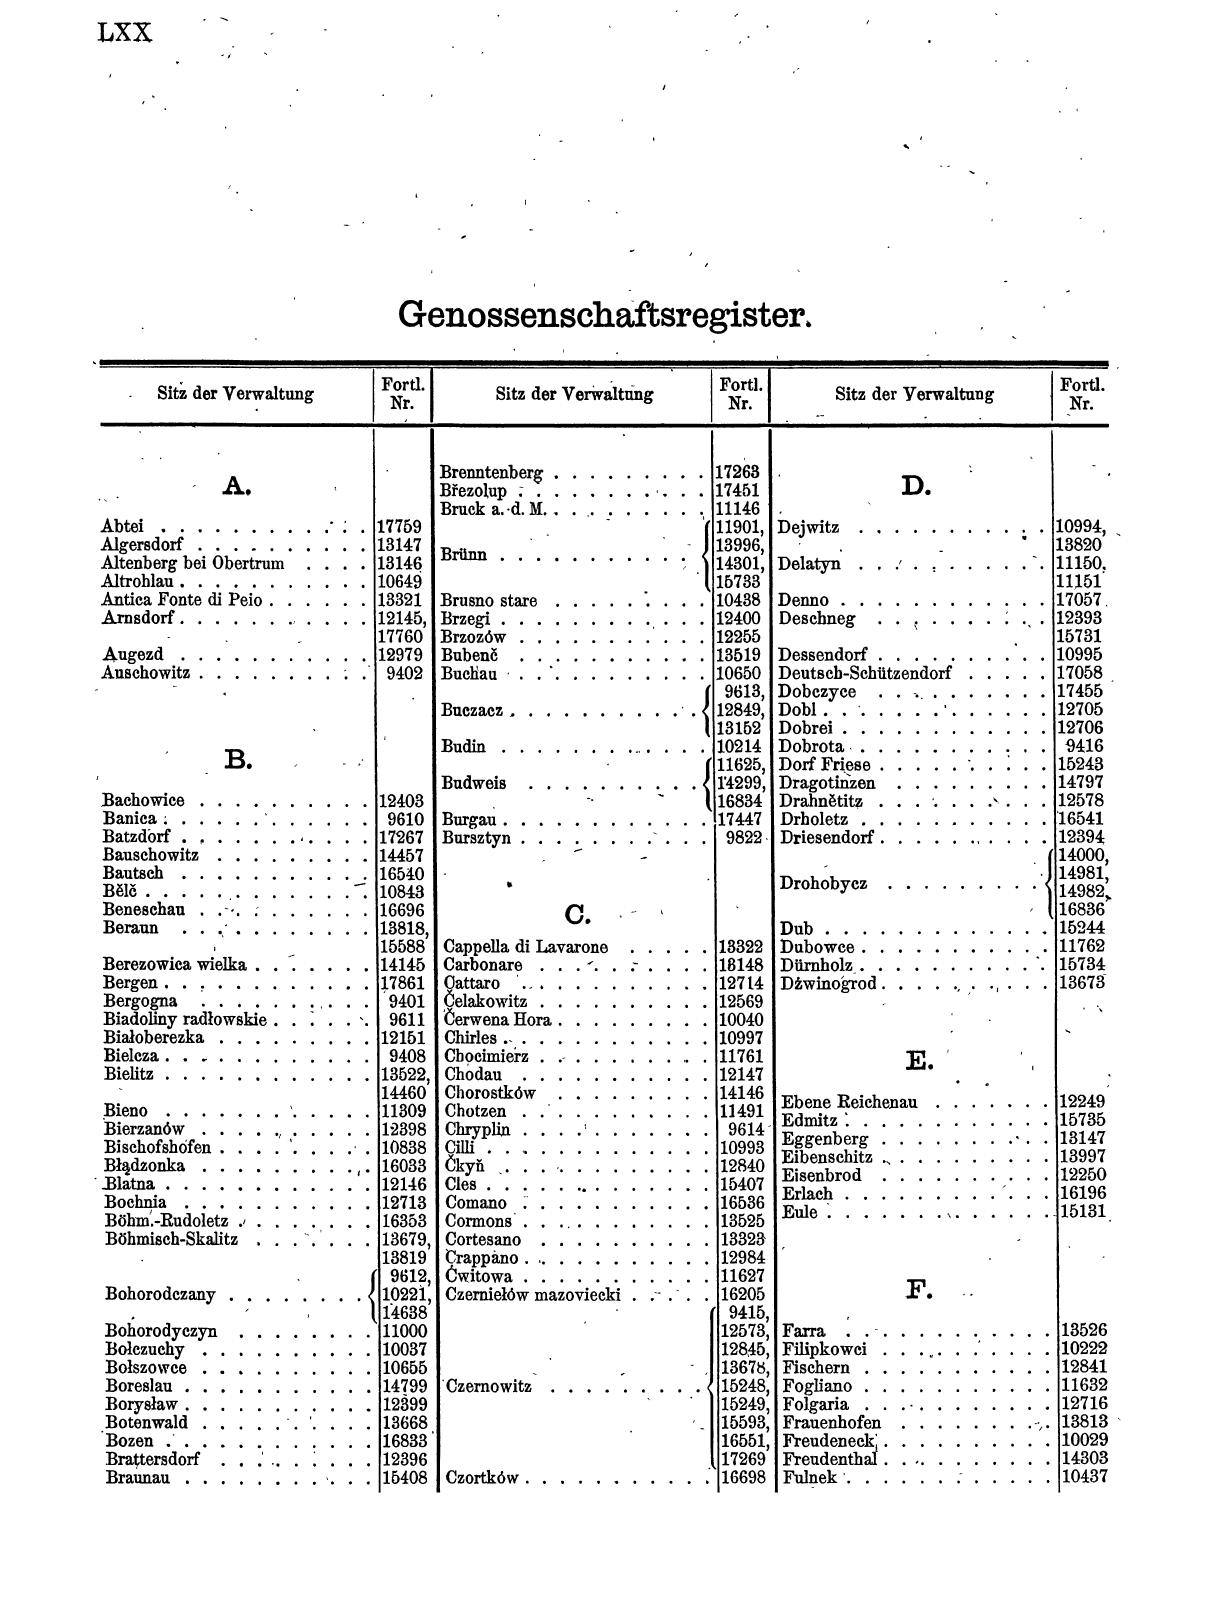 Zentralblatt für die Eintragungen in das Handelsregister 1913, Teil 2 - Seite 74